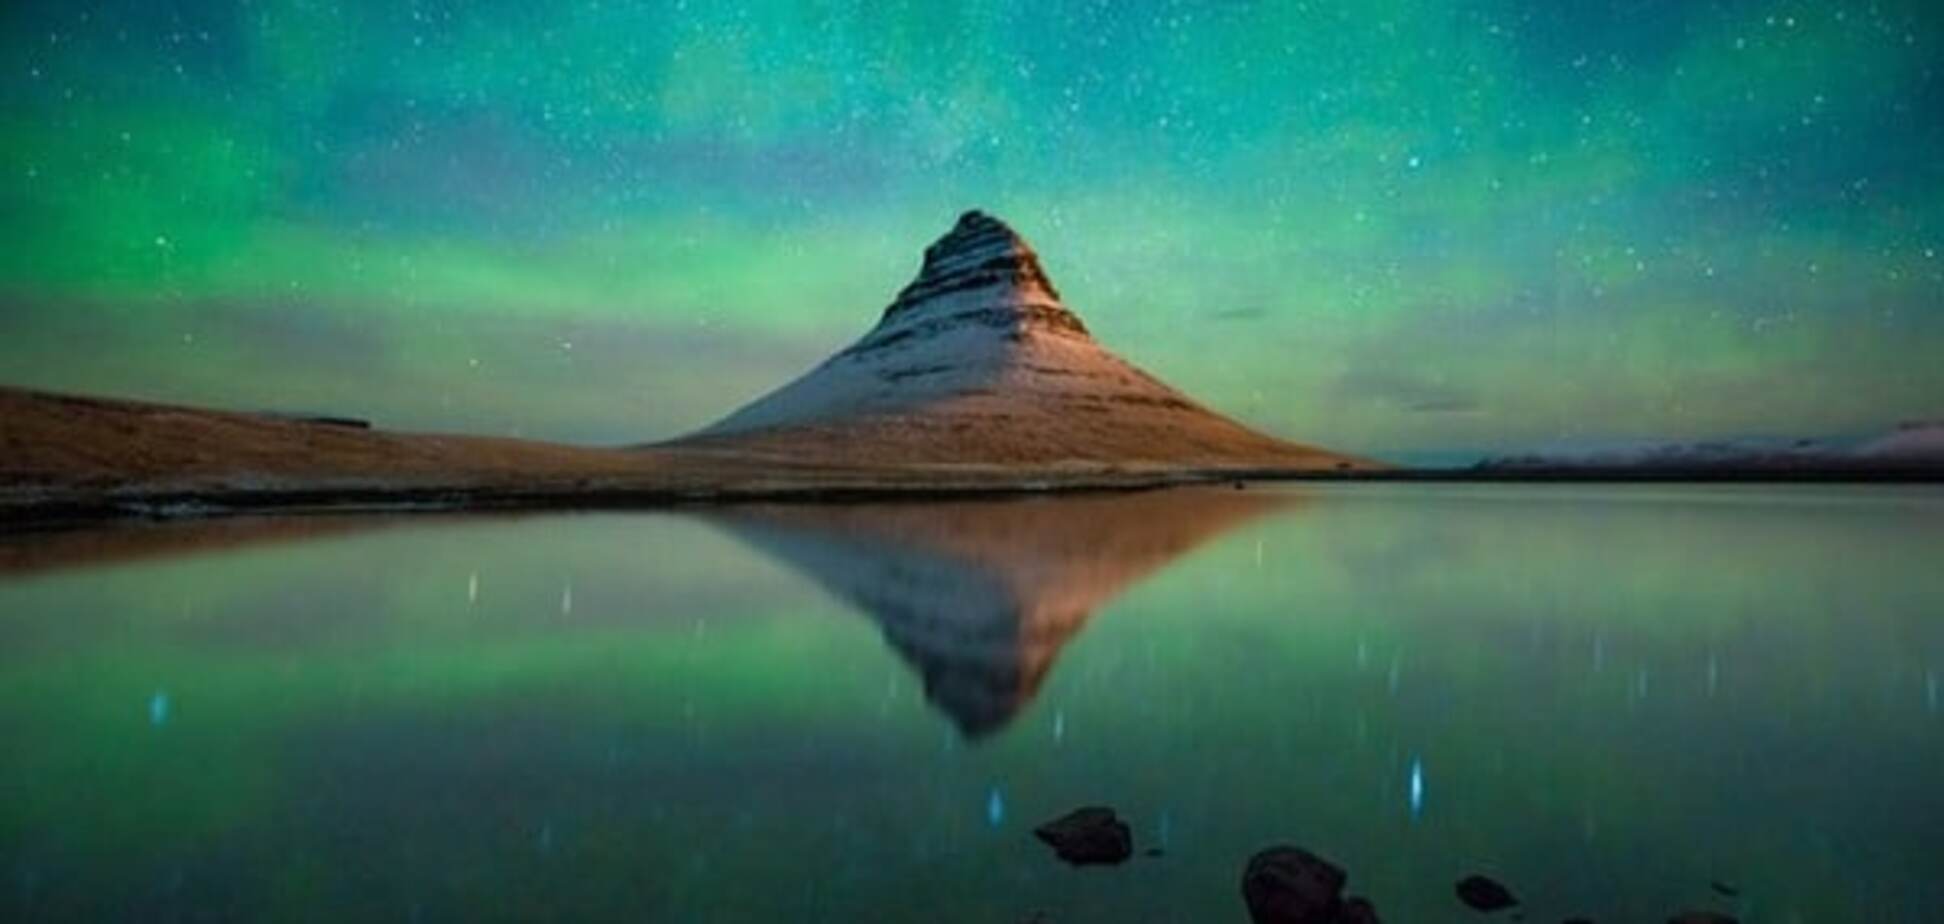 Фотограф опубликовал снимки Исландии, которые изменили его жизнь